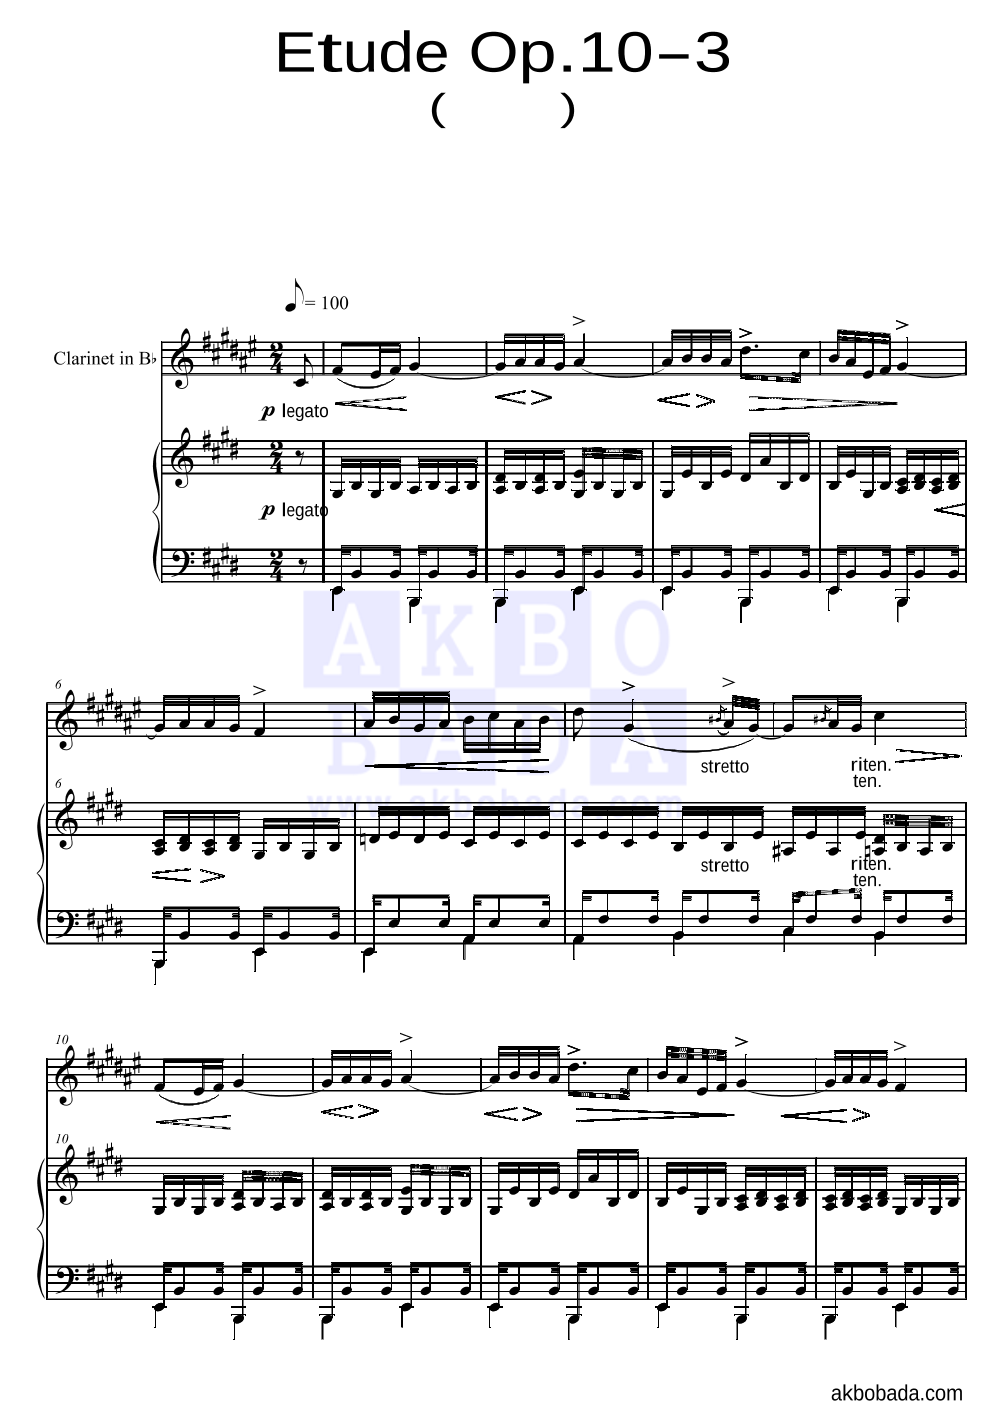 쇼팽 - Etude Op.10 No.3(이별곡) 클라리넷&피아노 악보 